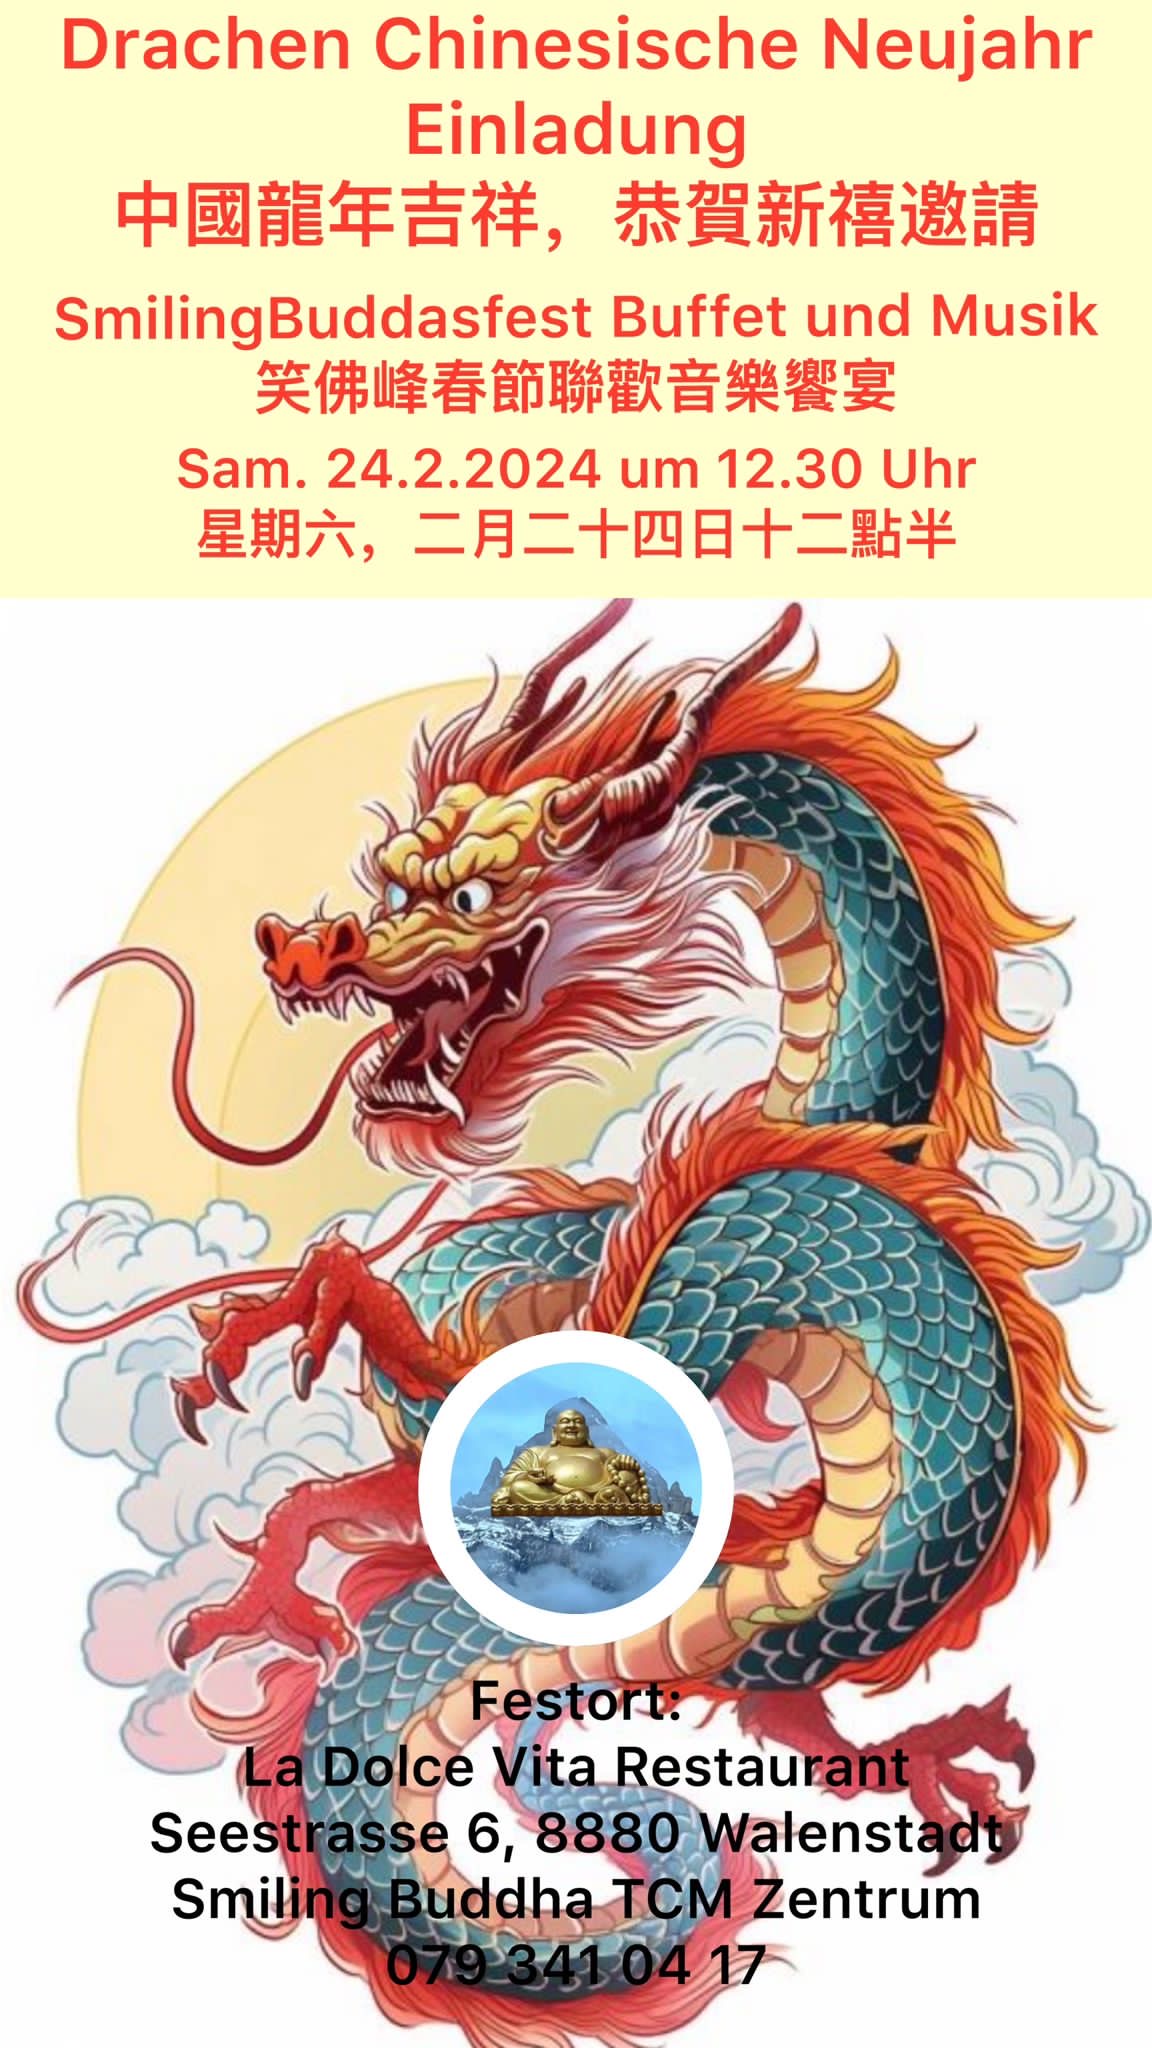 Drachen Chinesische Neujahr - Smiling Buddha TCM Chinese Culture Center